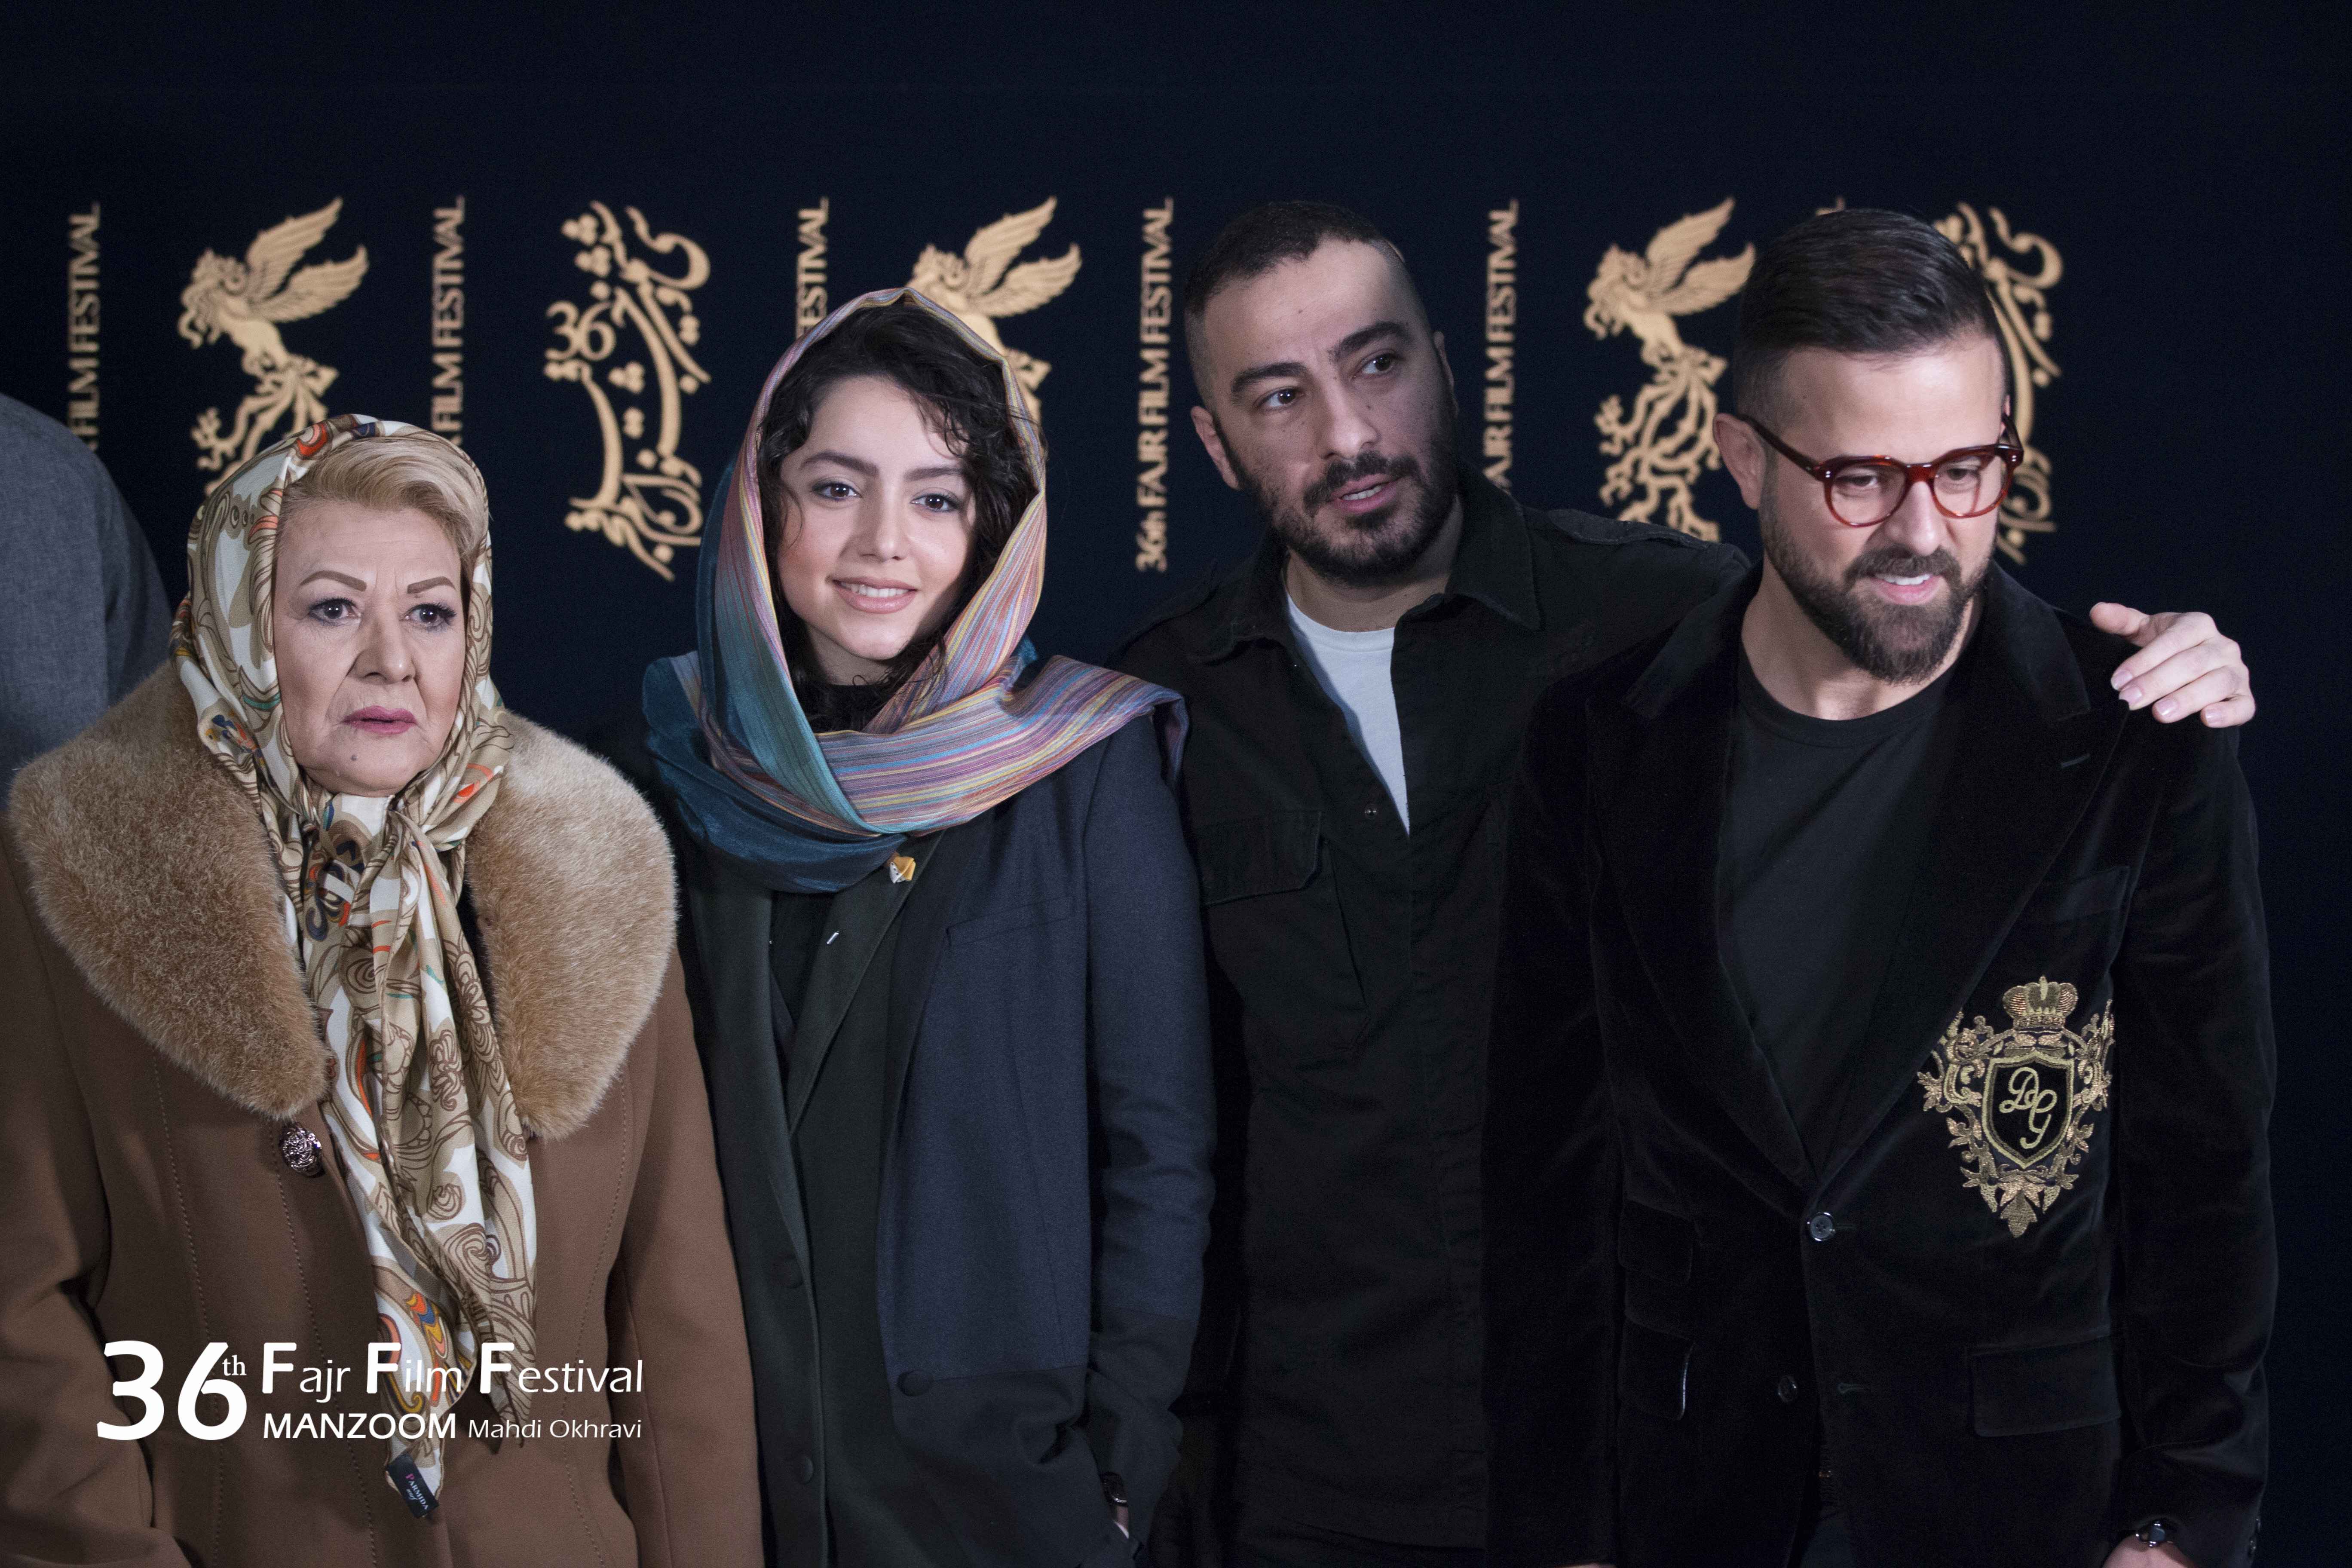 نوید محمدزاده در جشنواره فیلم سینمایی مغزهای کوچک زنگ زده به همراه لادن ژاوه وند، نازنین بیاتی و هومن سیدی